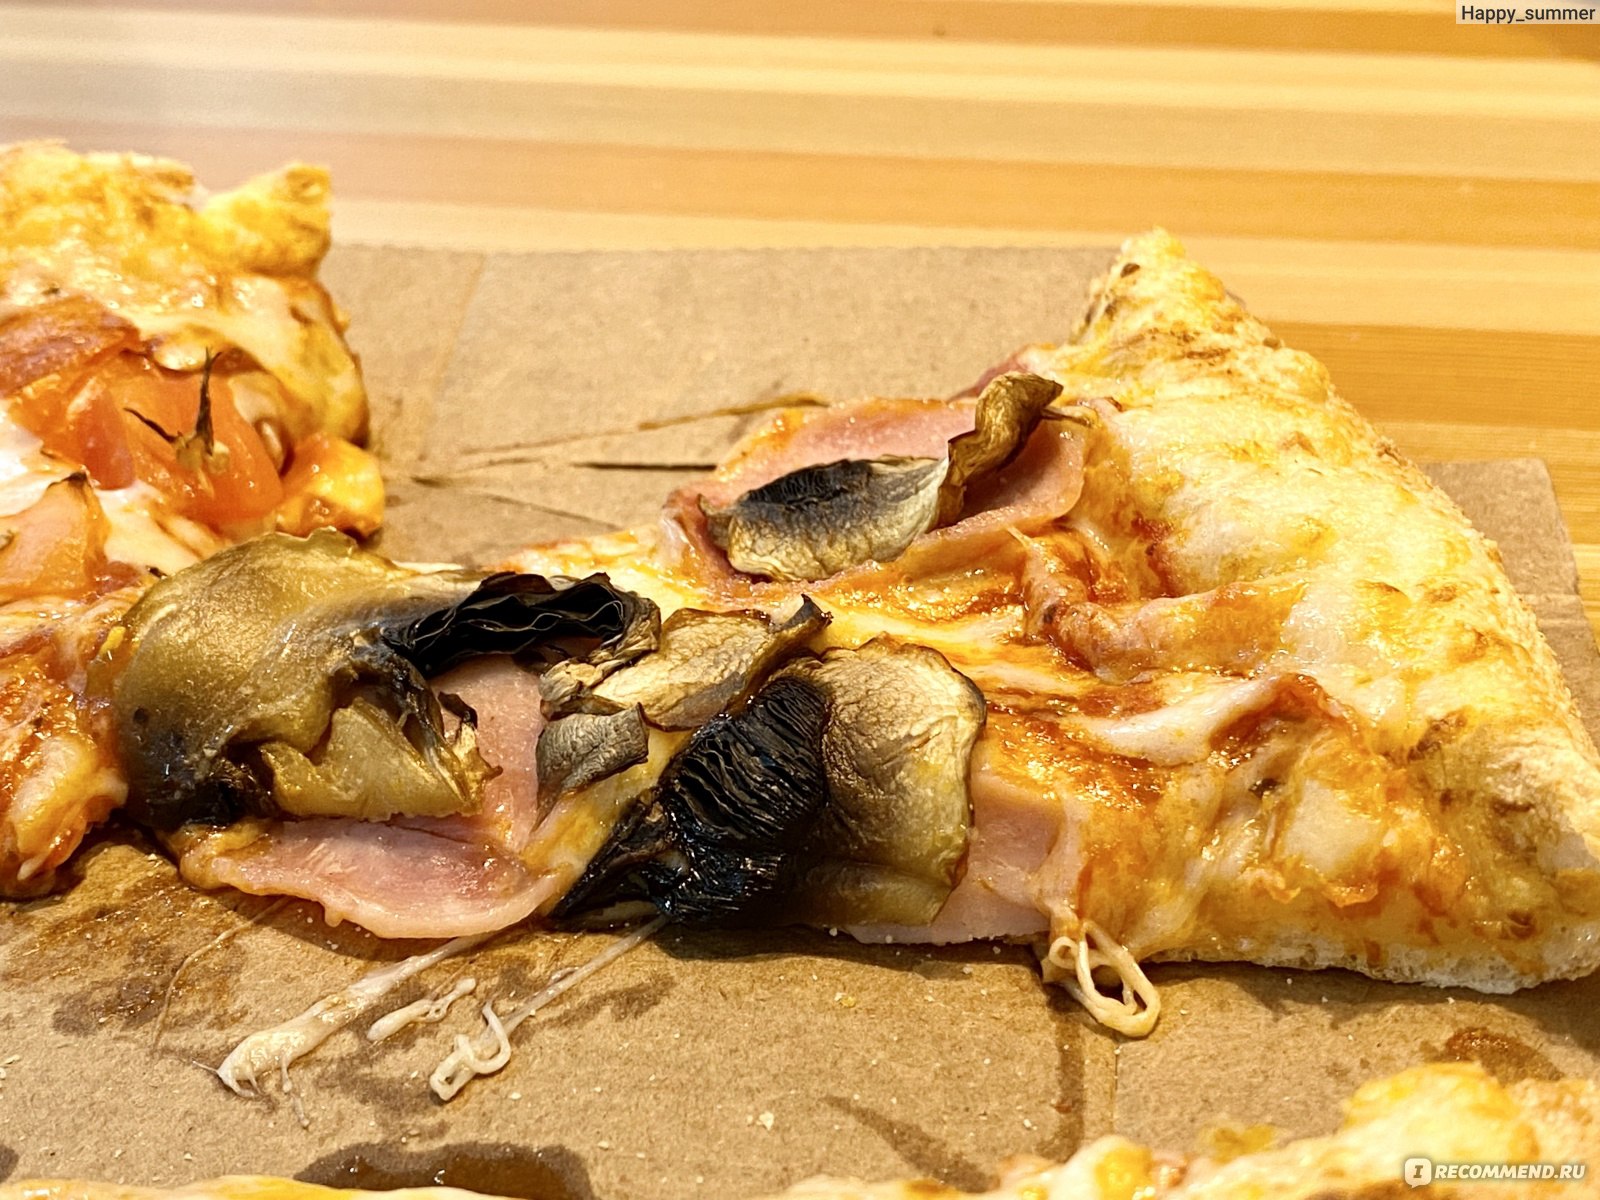 Пицца Додо 4 сезона фото